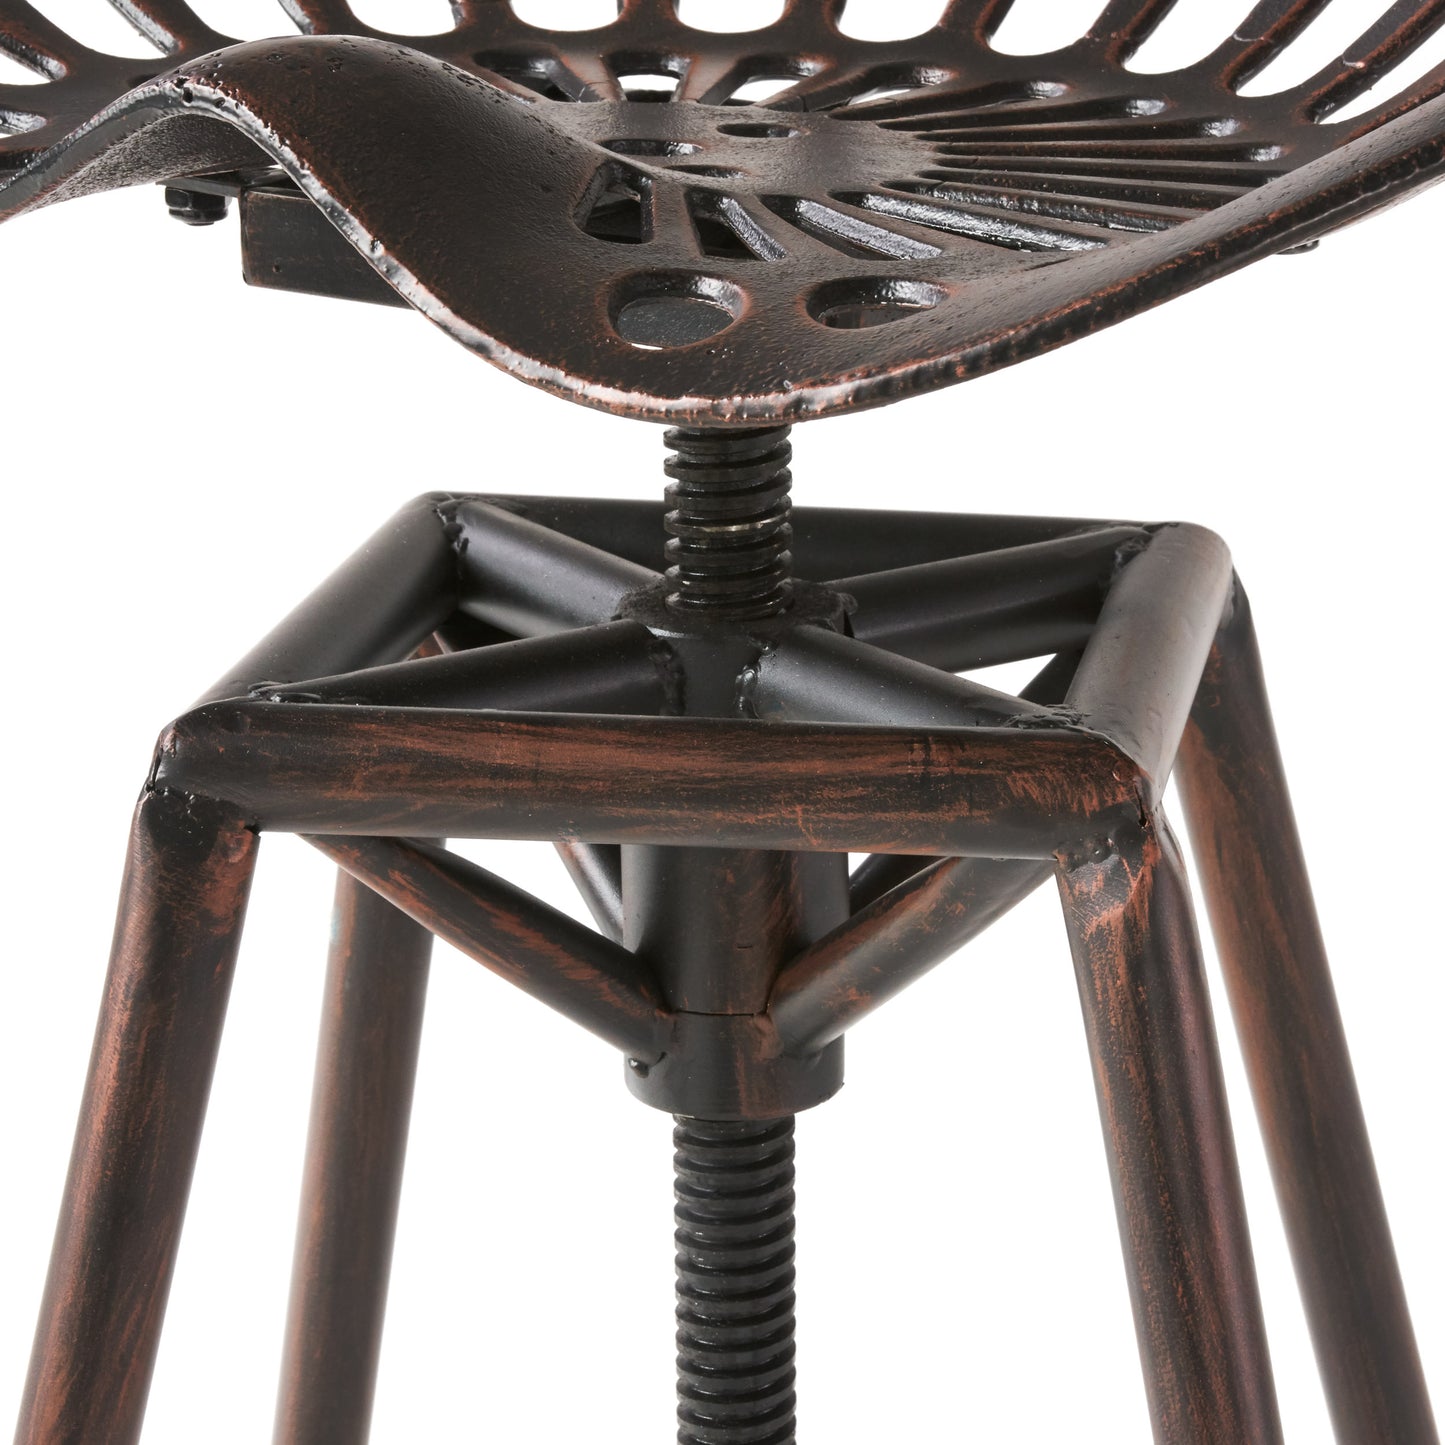 Charlie Industrial Metal Design Tractor Seat Adjustable Bar Stool (Black Brushed Copper)